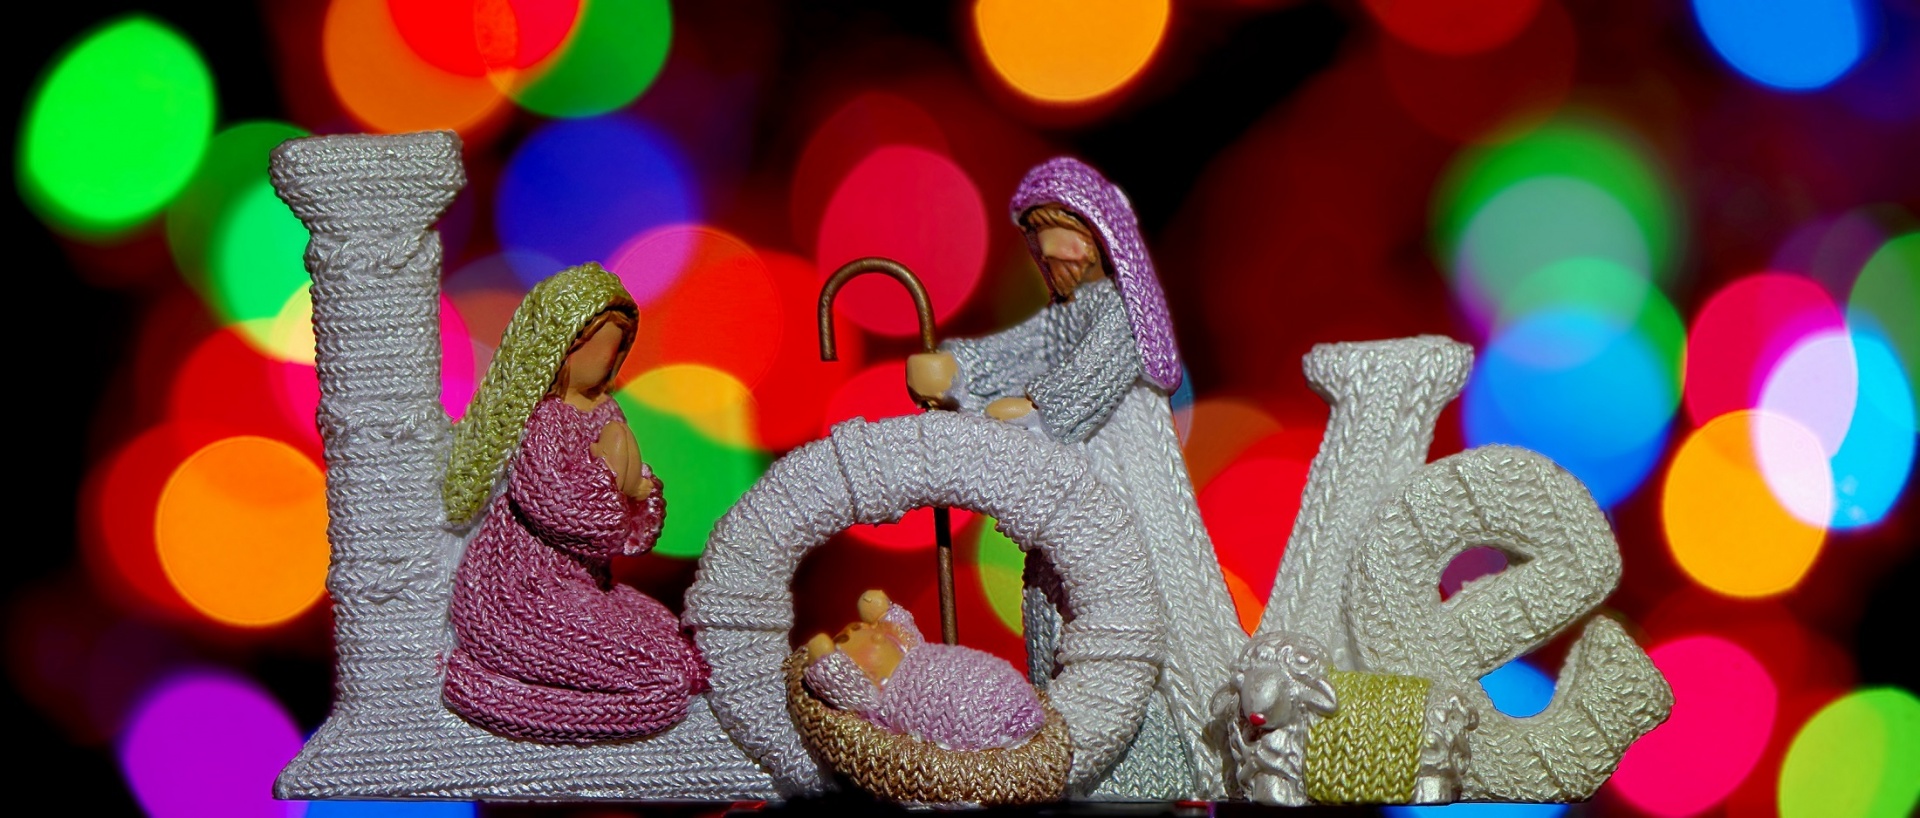 christmas decoration manger scene free photo